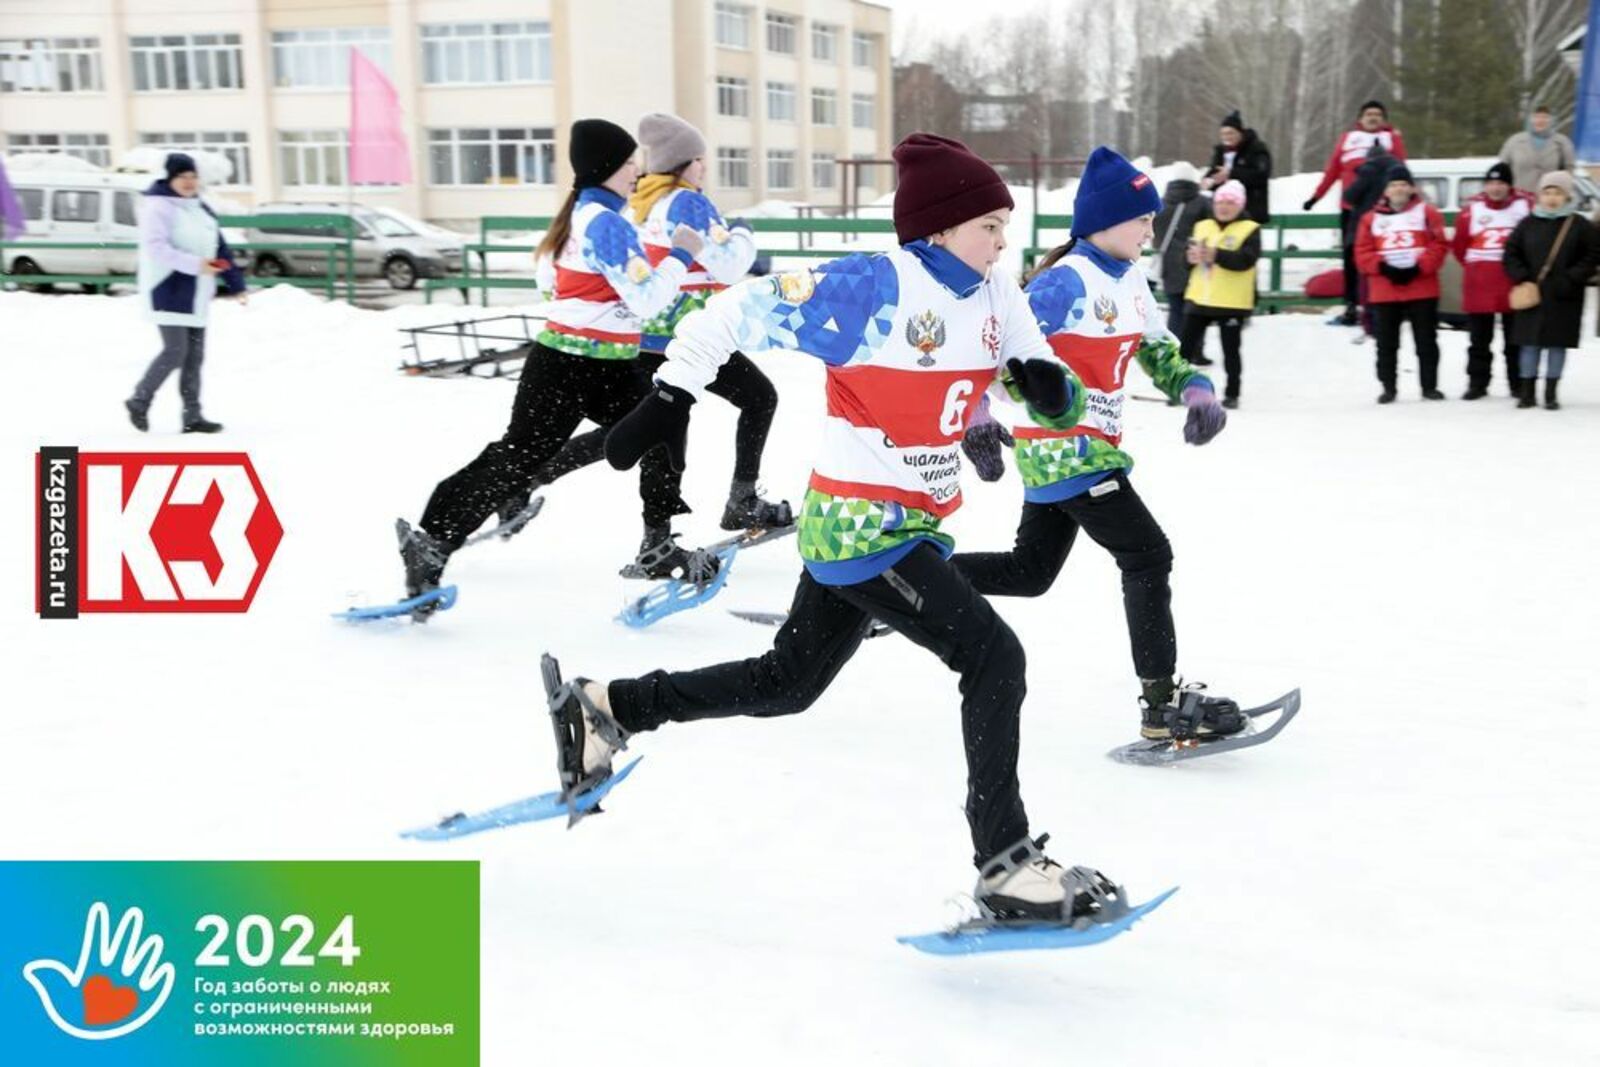 Бег на снегоступах – один из увлекательных видов спорта. Фото: Руслан Никонов, «КЗ».